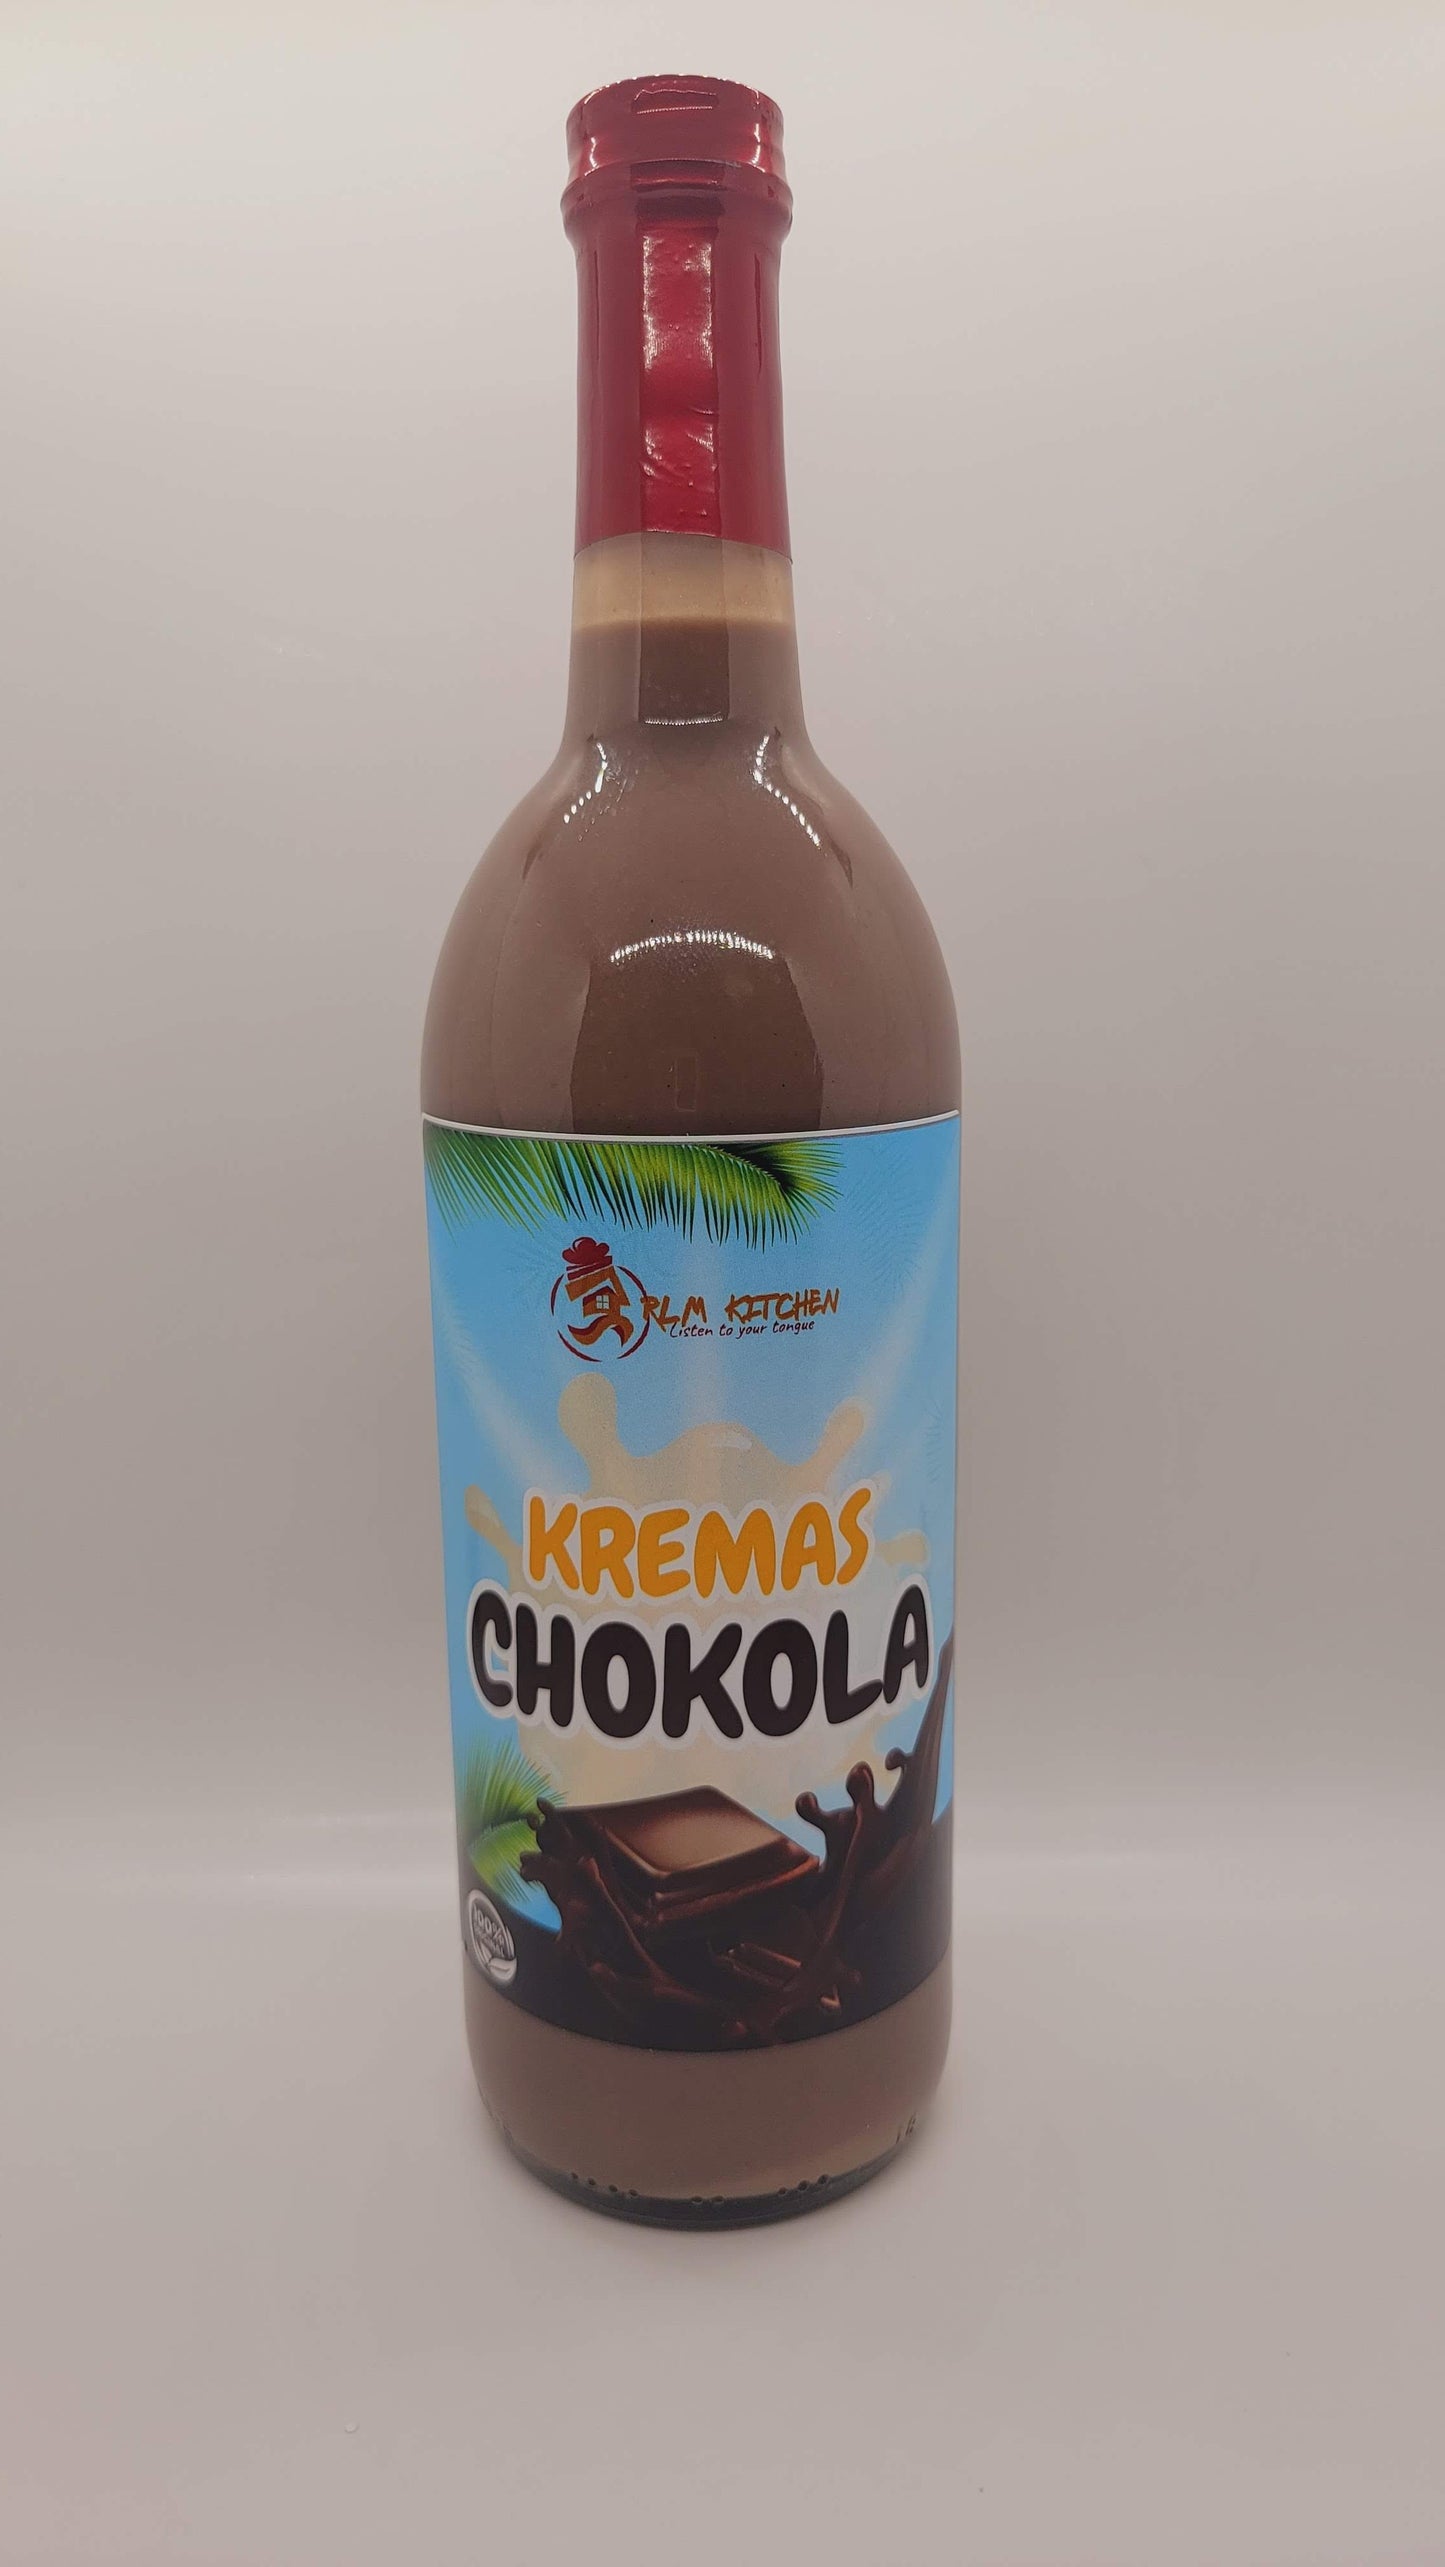 Kremas chokola (chocolate cream )